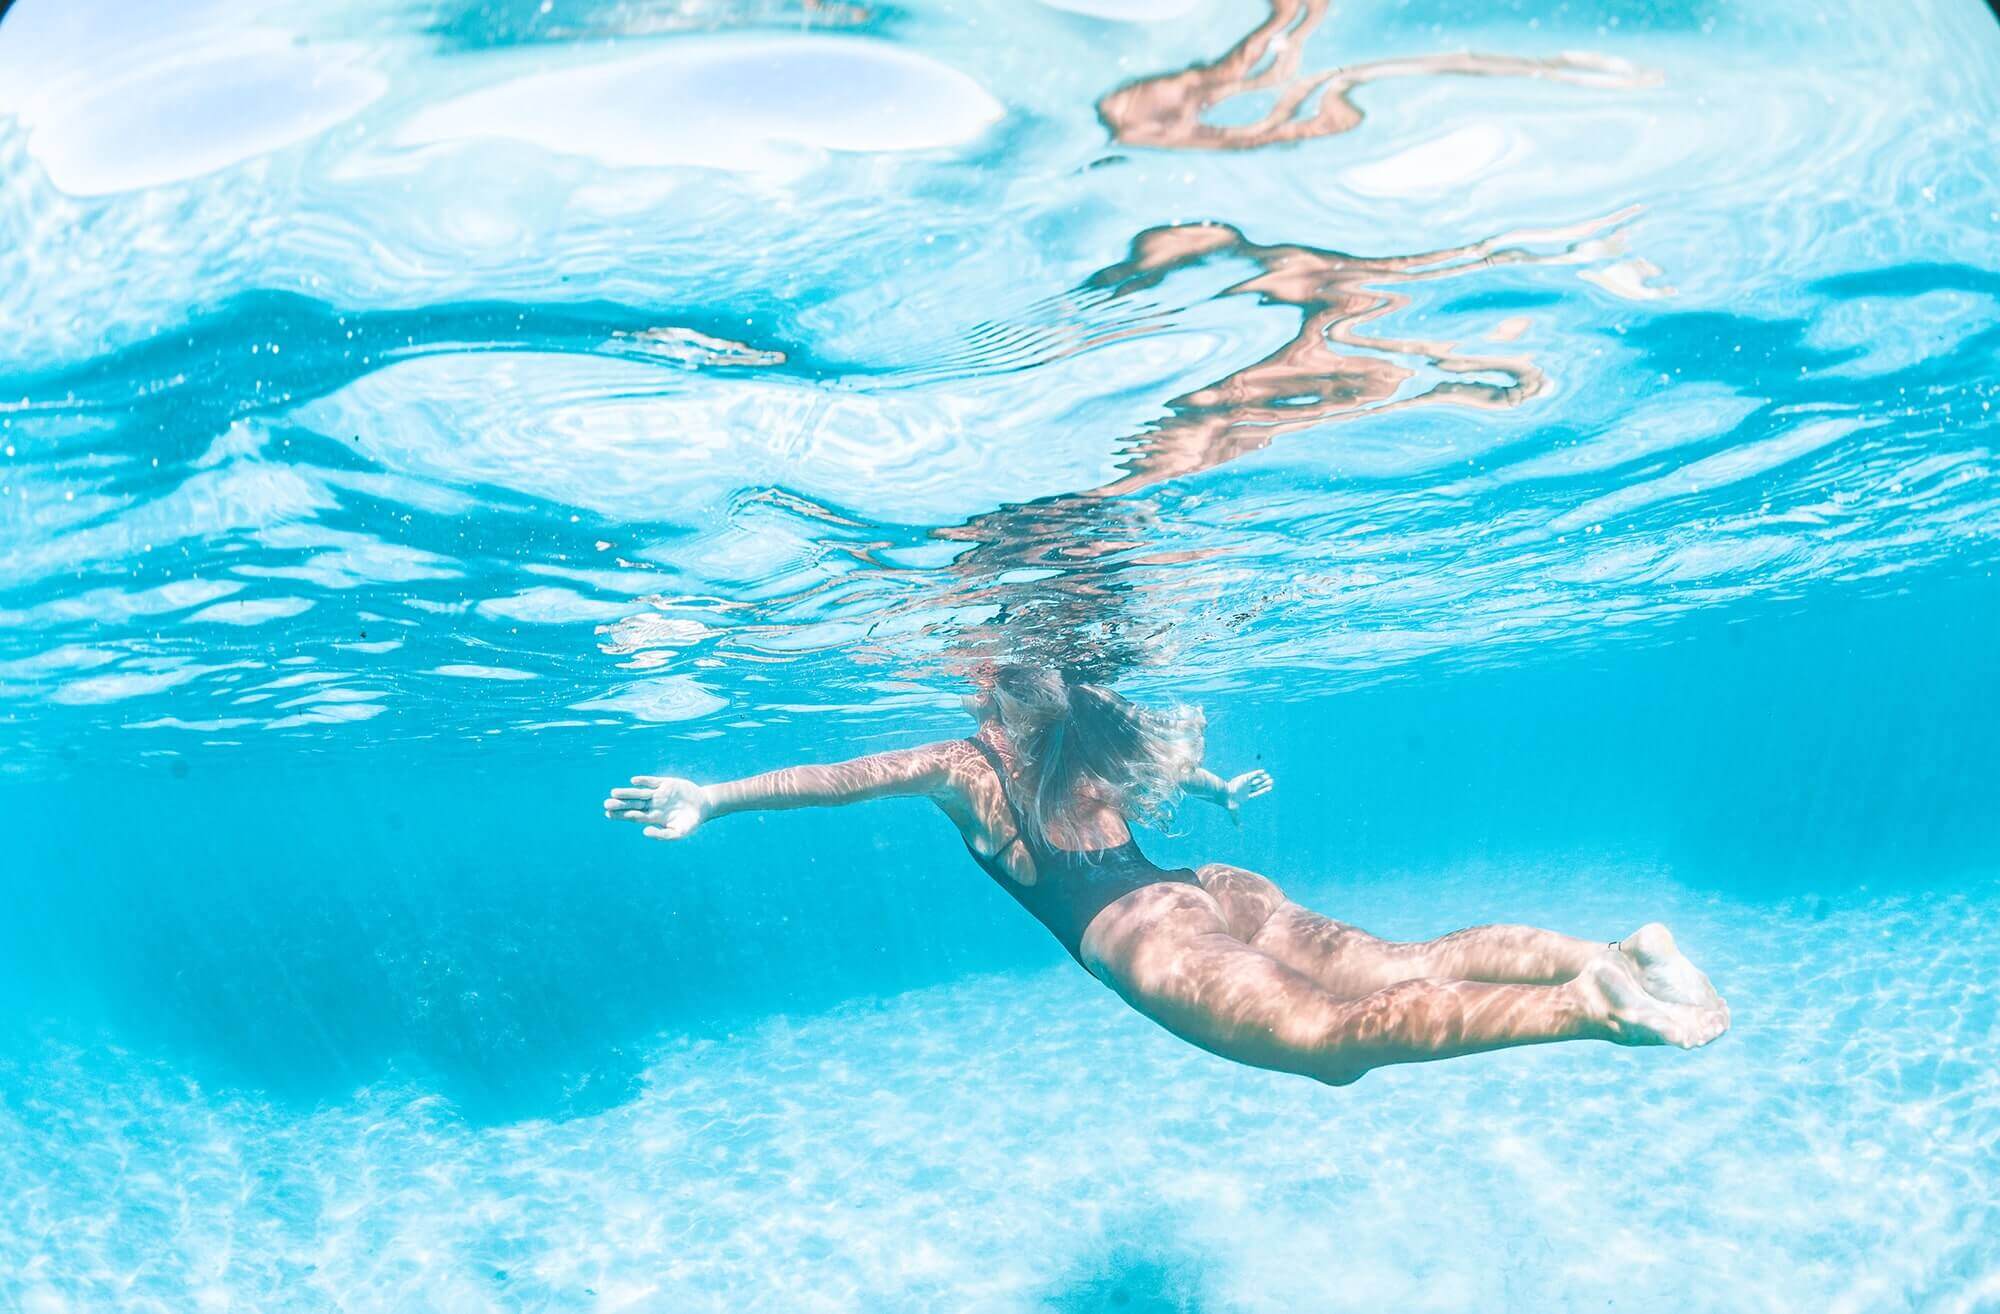 Imagem submersa de mulher mergulhando.